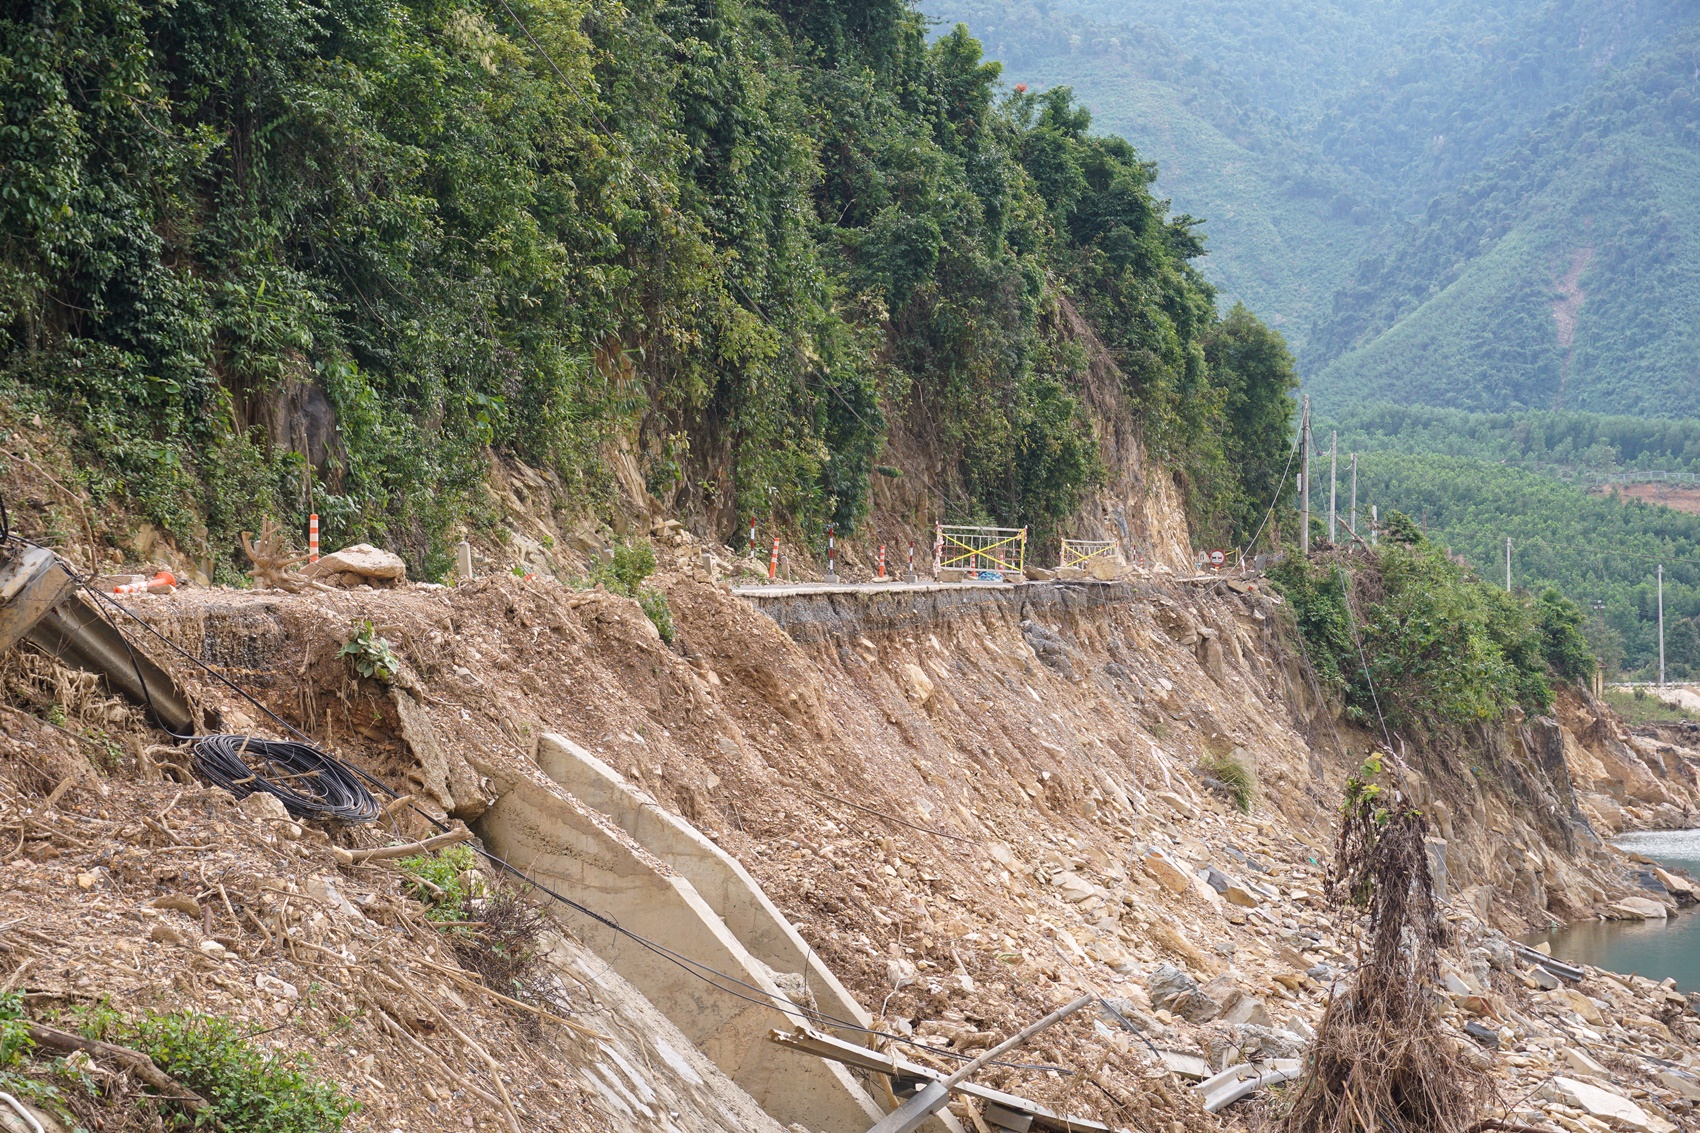 Đường hơn 700 tỷ ở Đà Nẵng chưa hoàn thiện đã nứt toác, sạt lở vì mưa lũ - Ảnh 6.